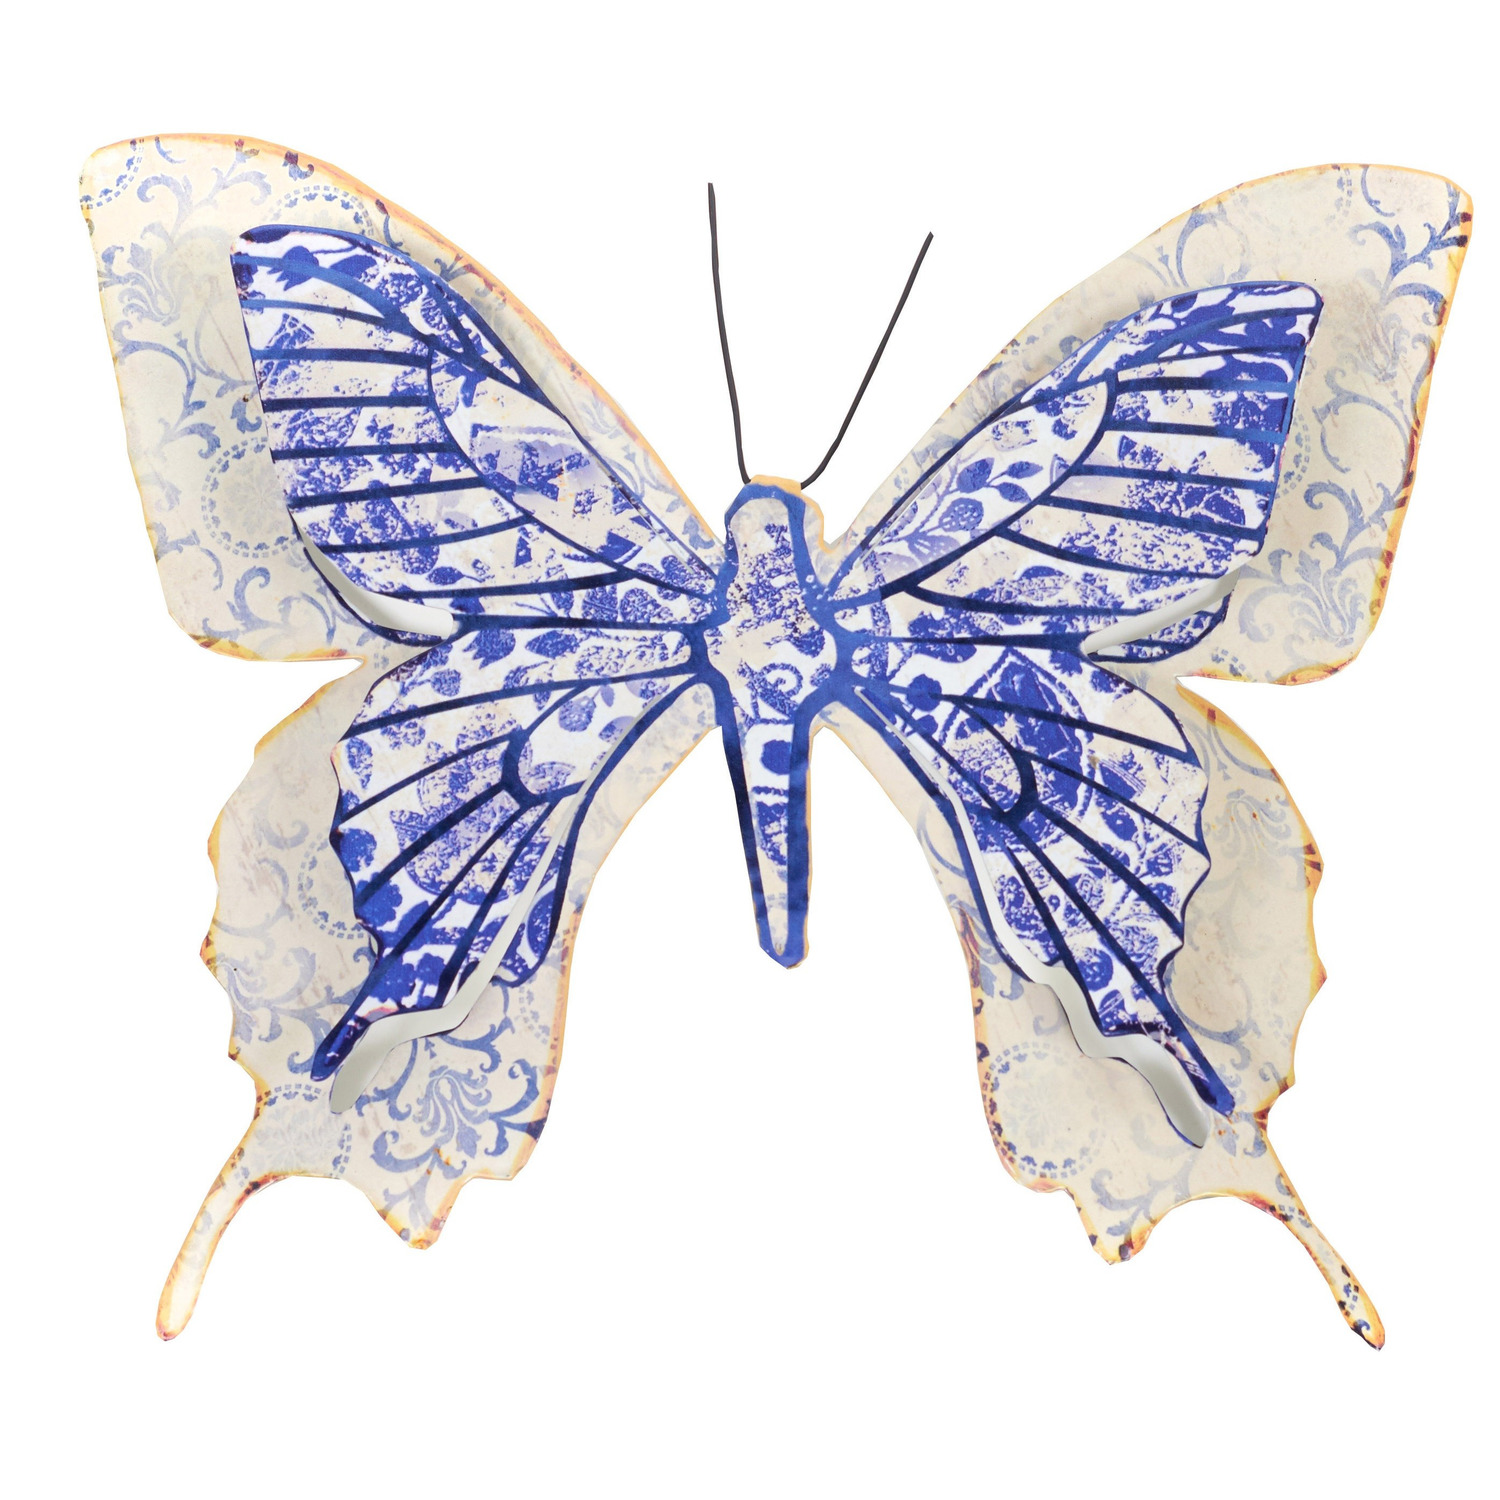 Afbeelding 1x Blauw/witte metalen tuindecoratie vlinder 31 cm door Animals Giftshop